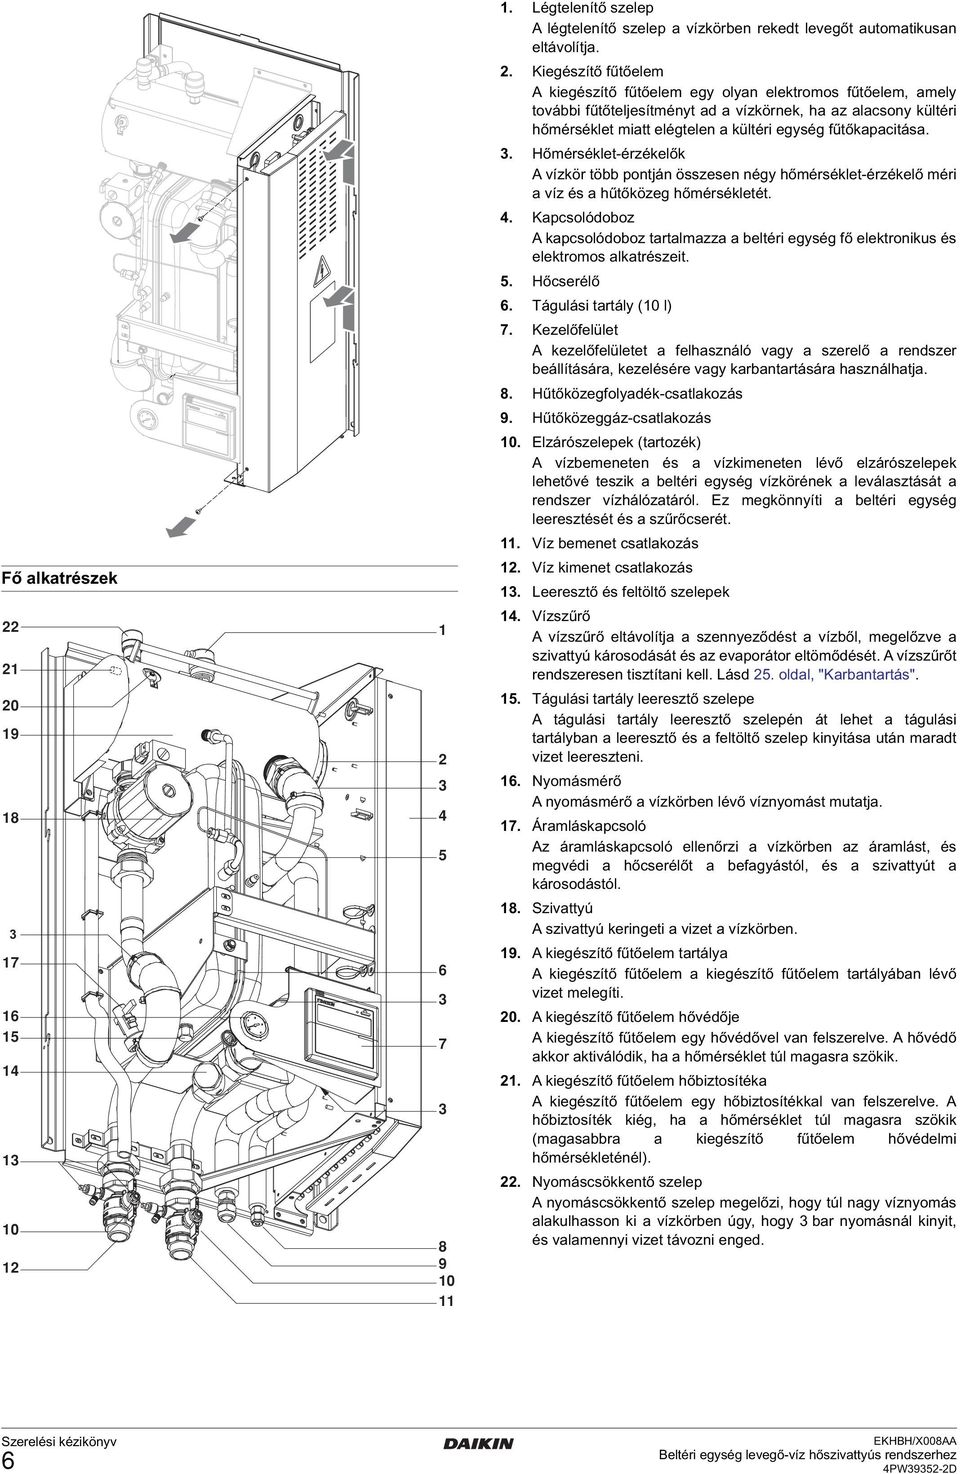 Szerelési kézikönyv. Beltéri egység levegő-víz hőszivattyús rendszerhez  EKHBH008AA EKHBX008AA - PDF Free Download